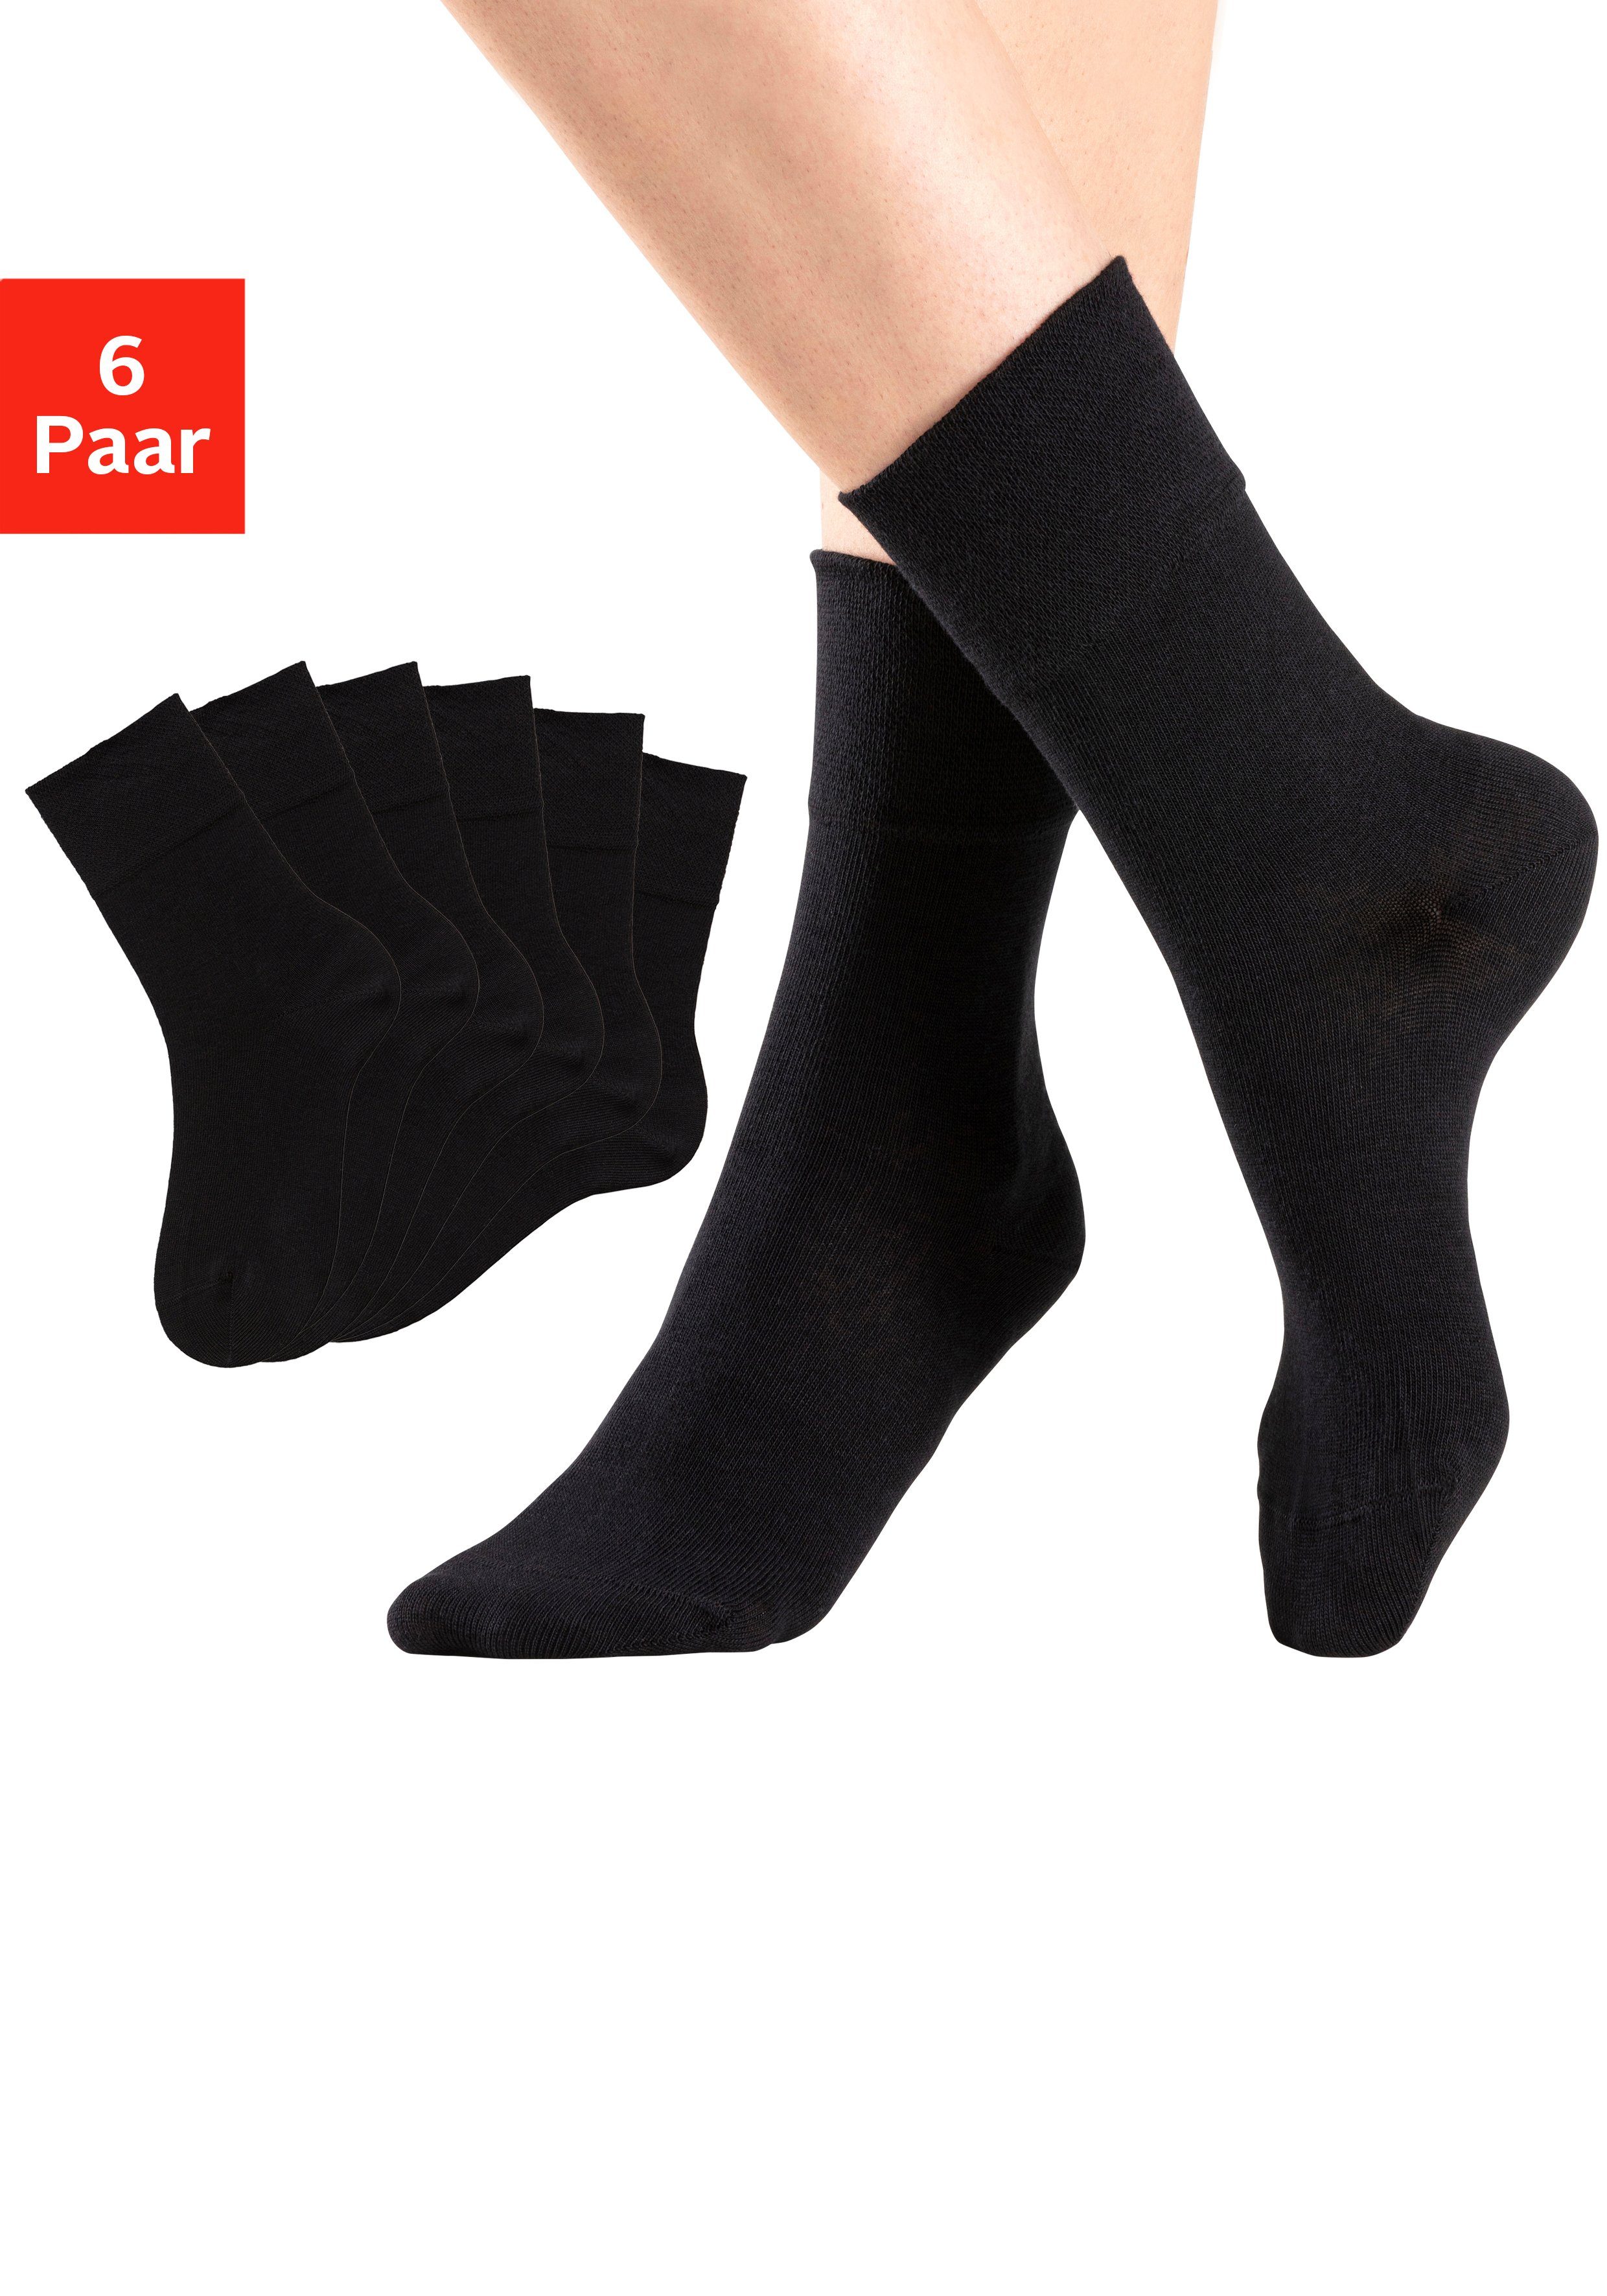 H.I.S Socken (6-Paar) mit Komfortbund auch für Diabetiker geeignet online  kaufen | OTTO